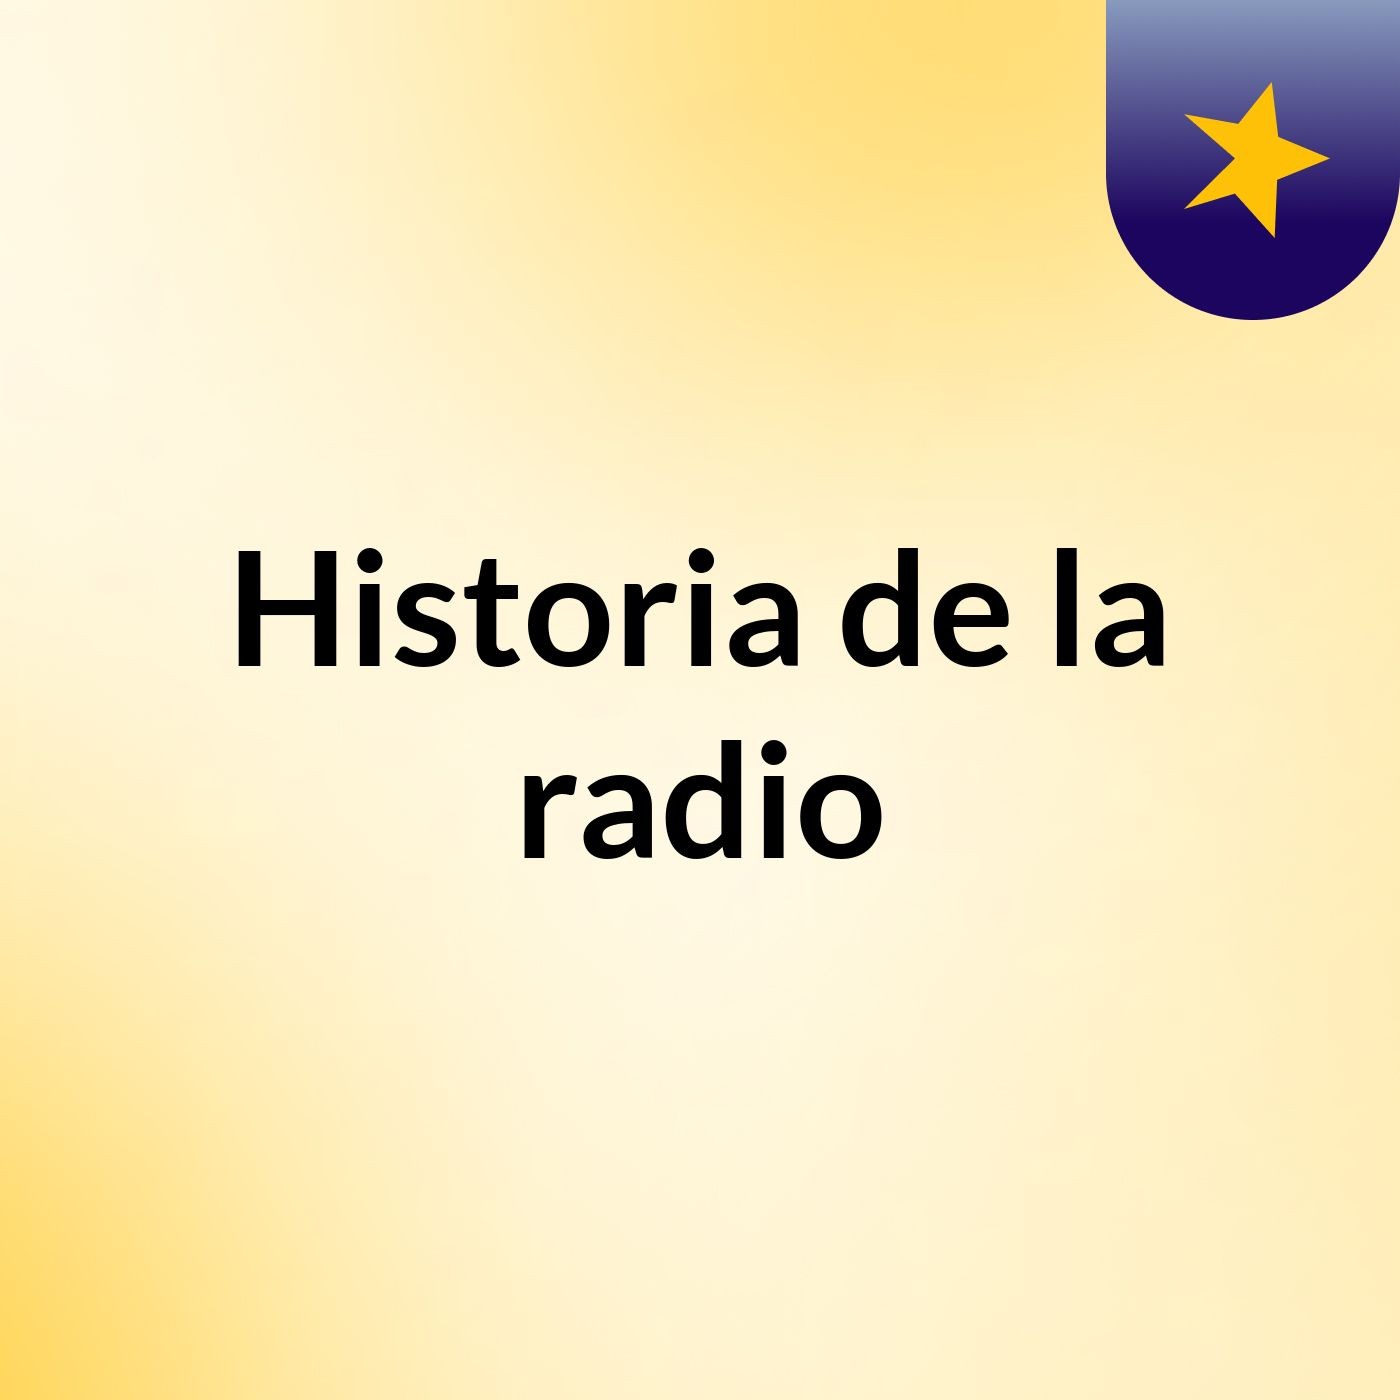 Historia de la radio